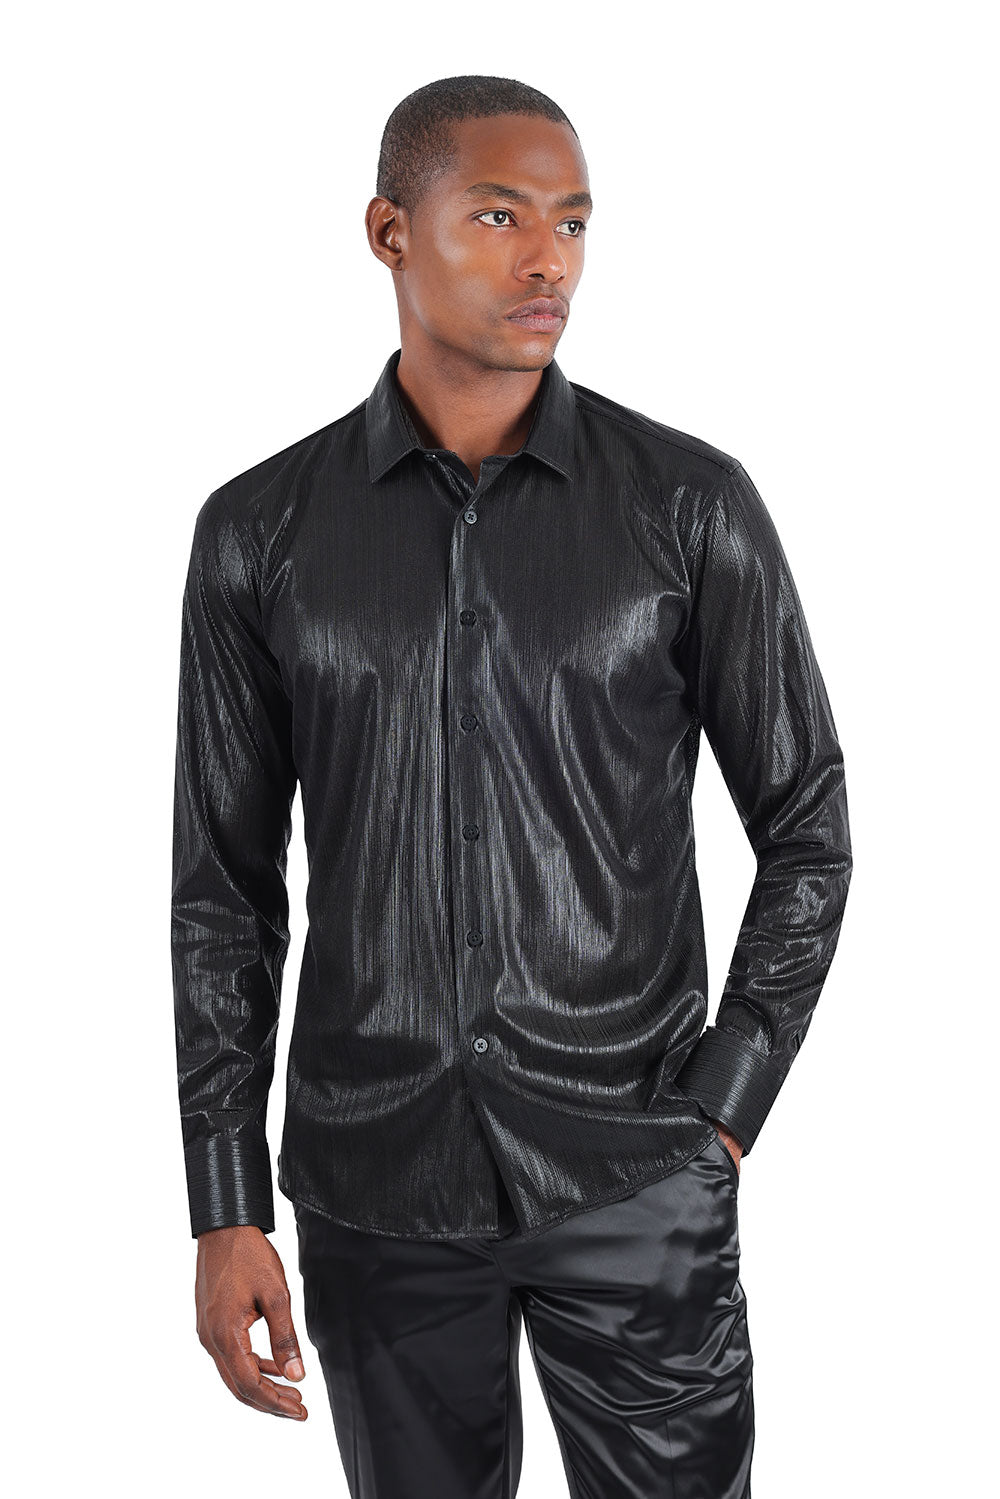 Barabas Black PU Patten Double Pocket Button Up Shirt - Dudes Boutique